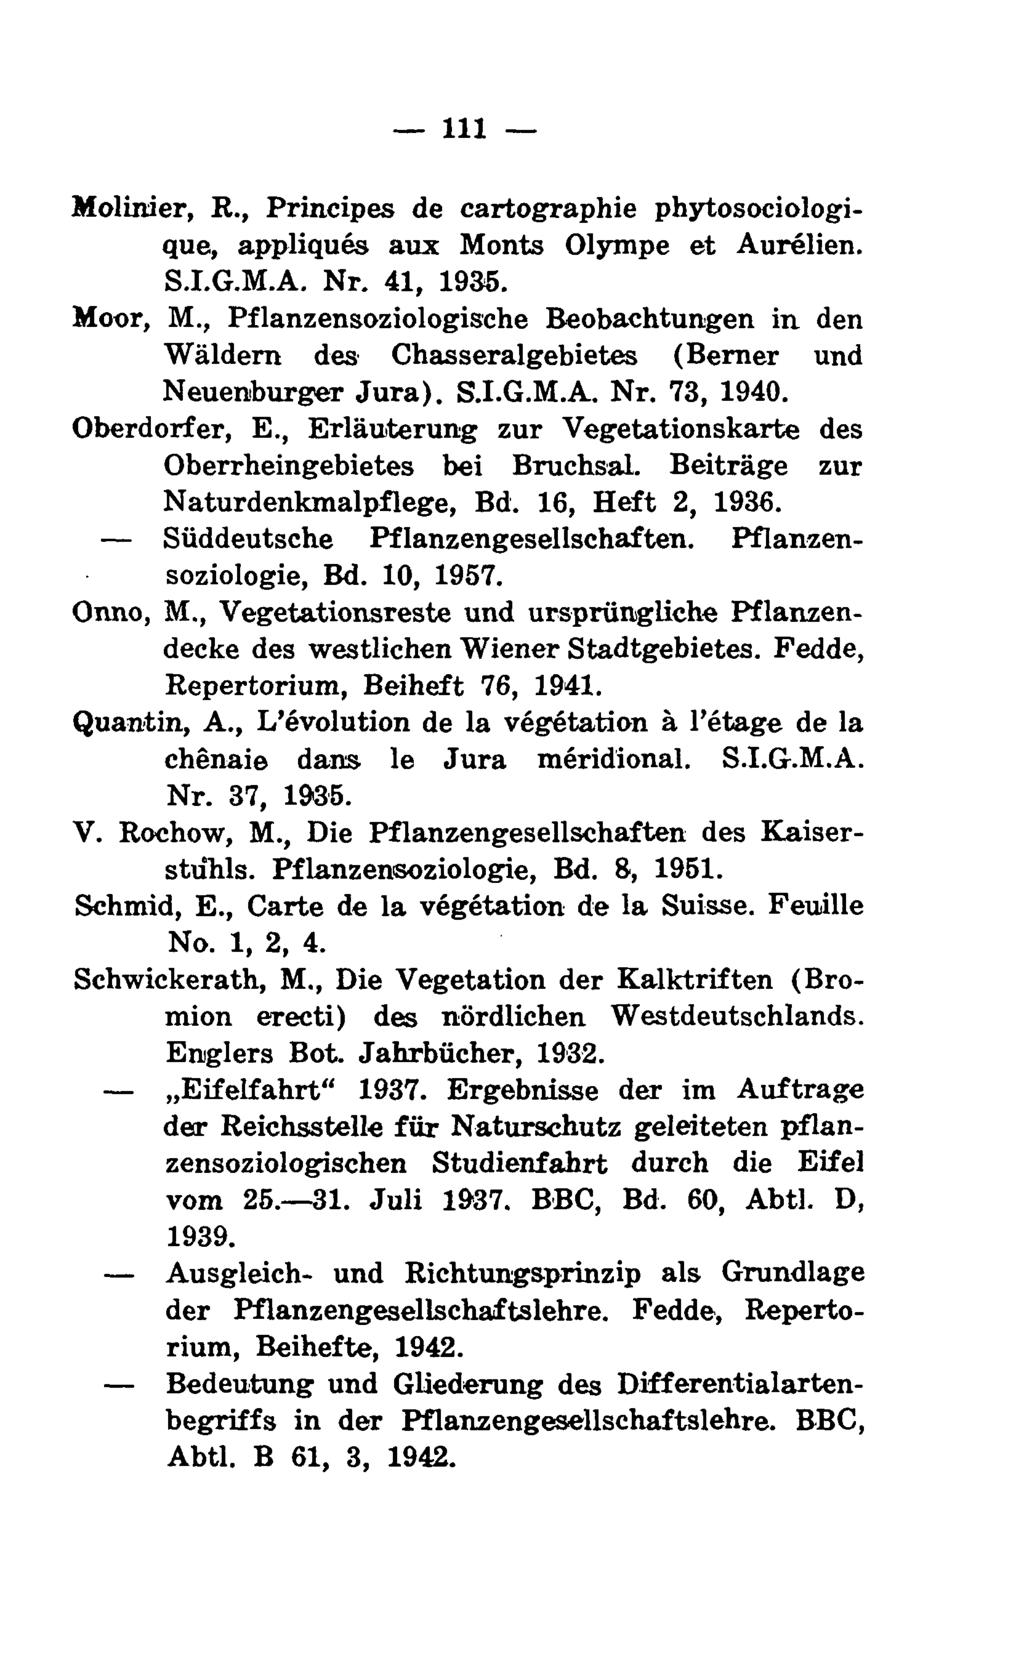 Ill Molinier, R., Principes de cartographie phytosociologique, appliques aux Monts Olympe et Aurelien. S.I.G.M.A. Nr. 41, 1935. Moor, M.